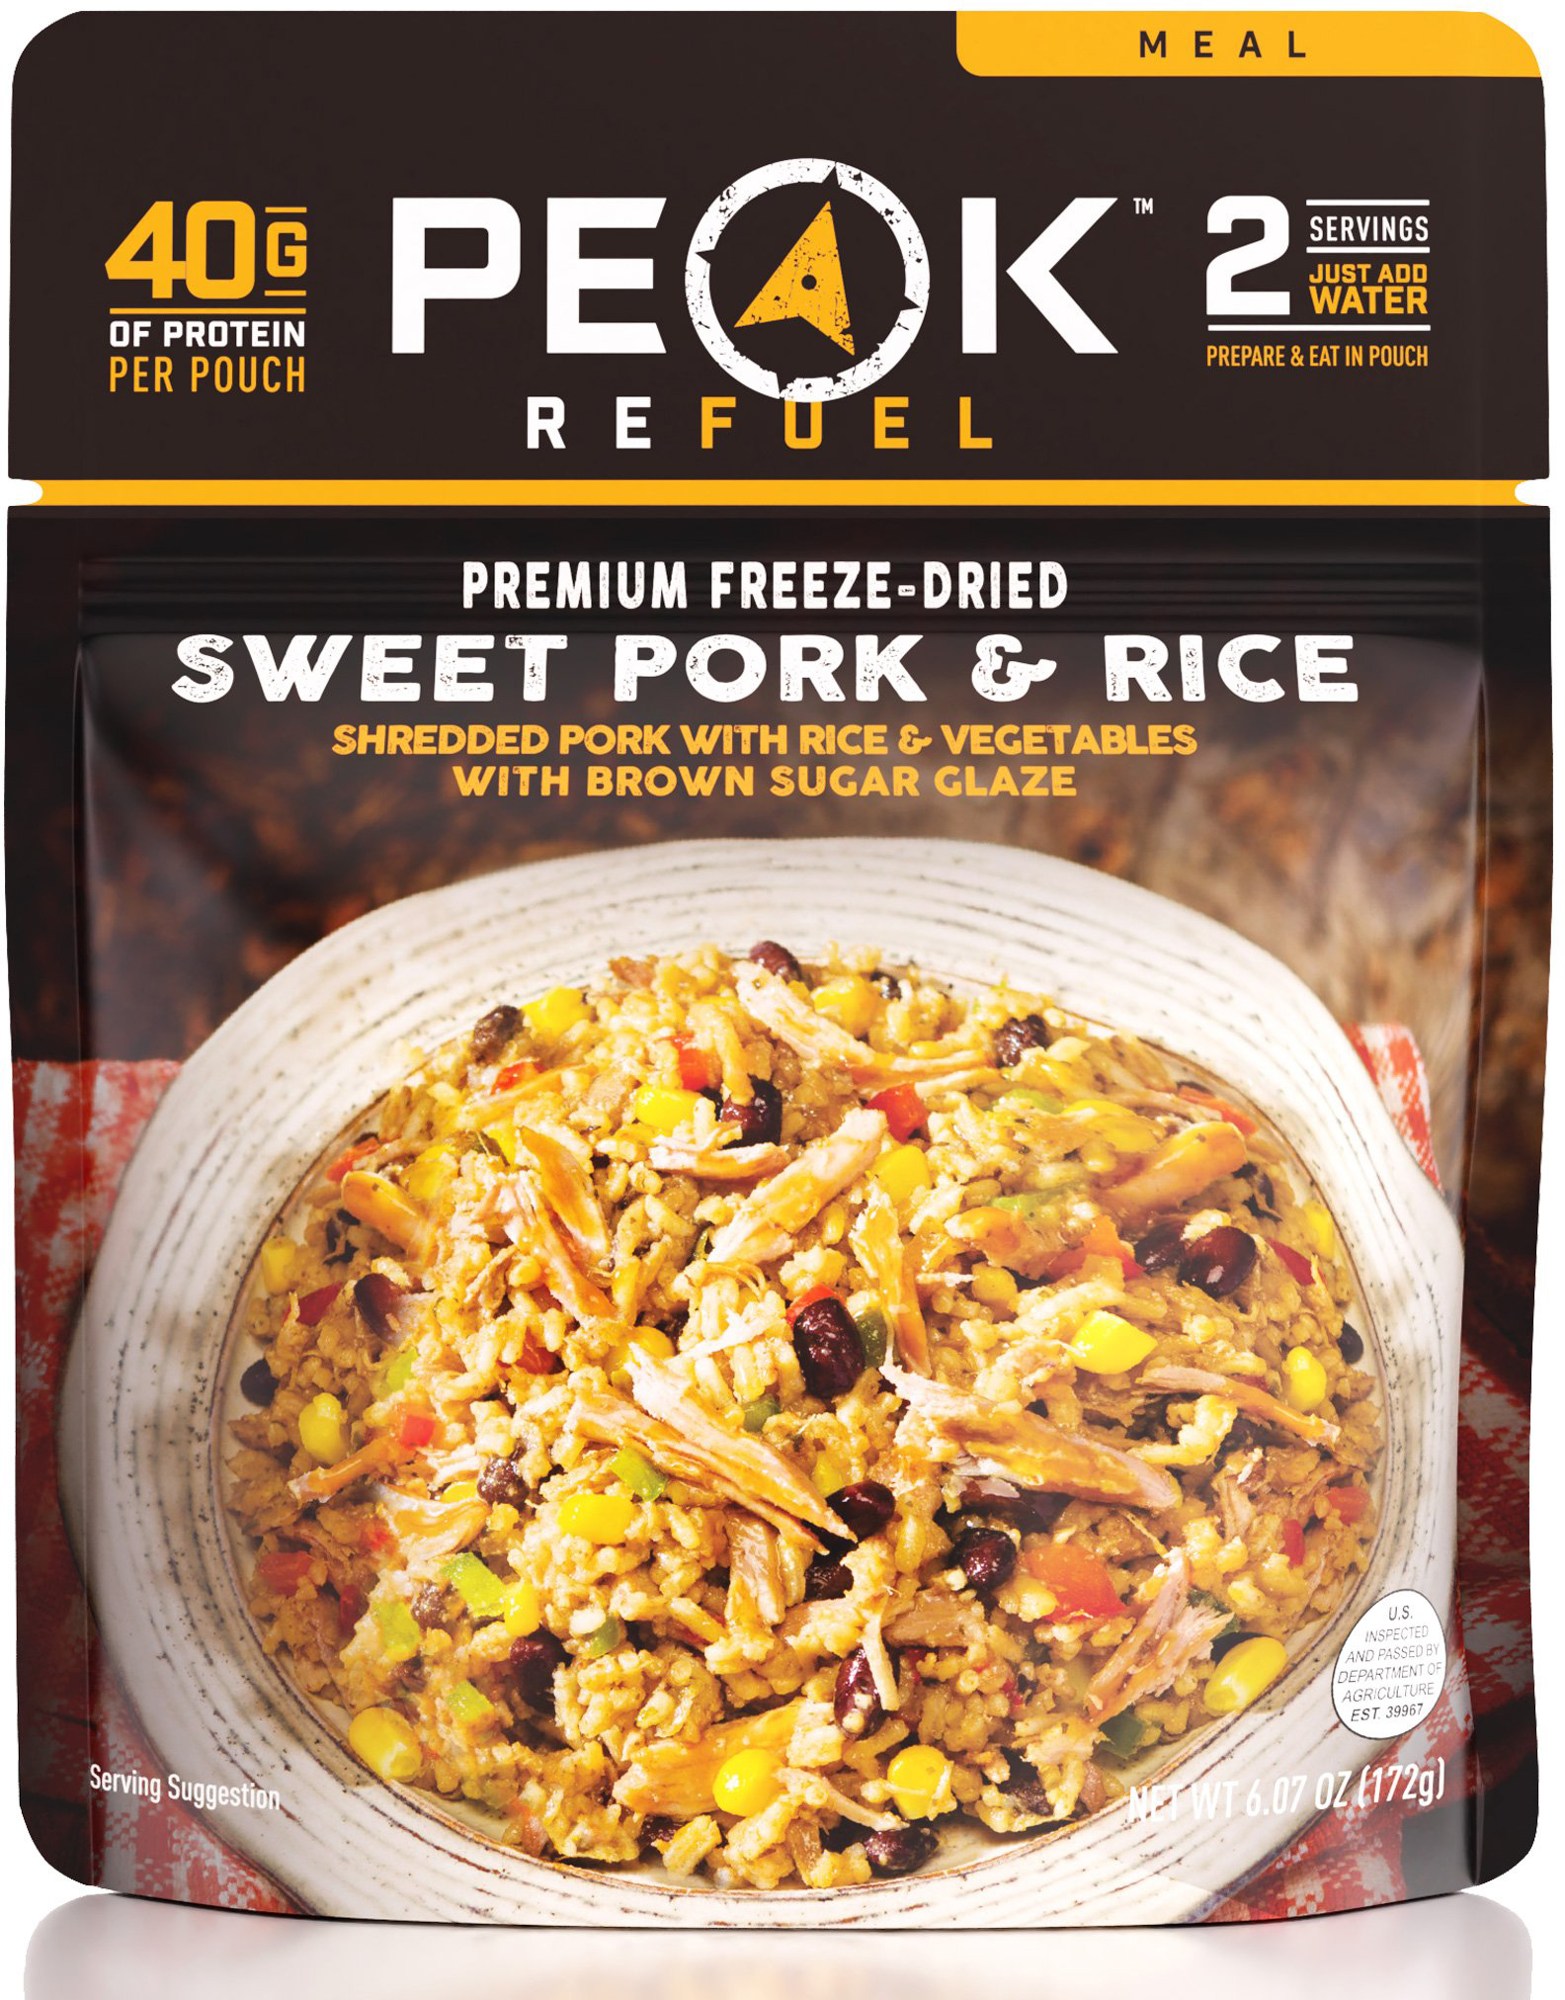 Сладкая свинина и рис — 2 порции PEAK REFUEL